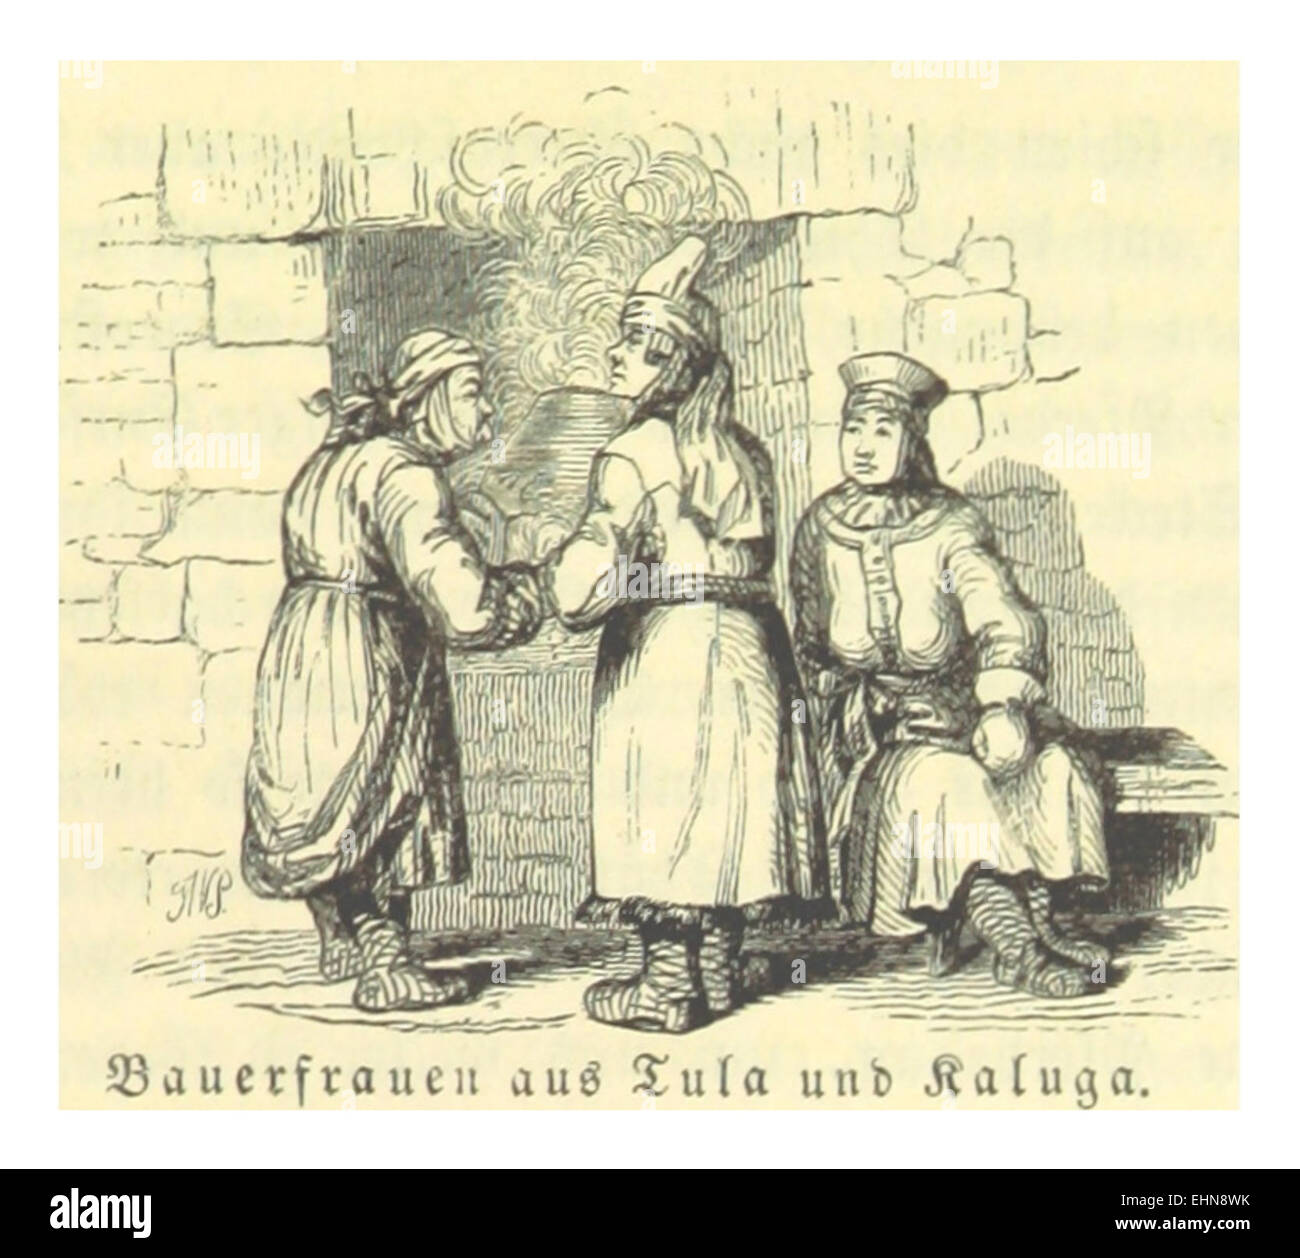 BLASIUS(1844) p2.465 Bauernfrauen aus der Gegend um Tula und Kaluga Stock Photo